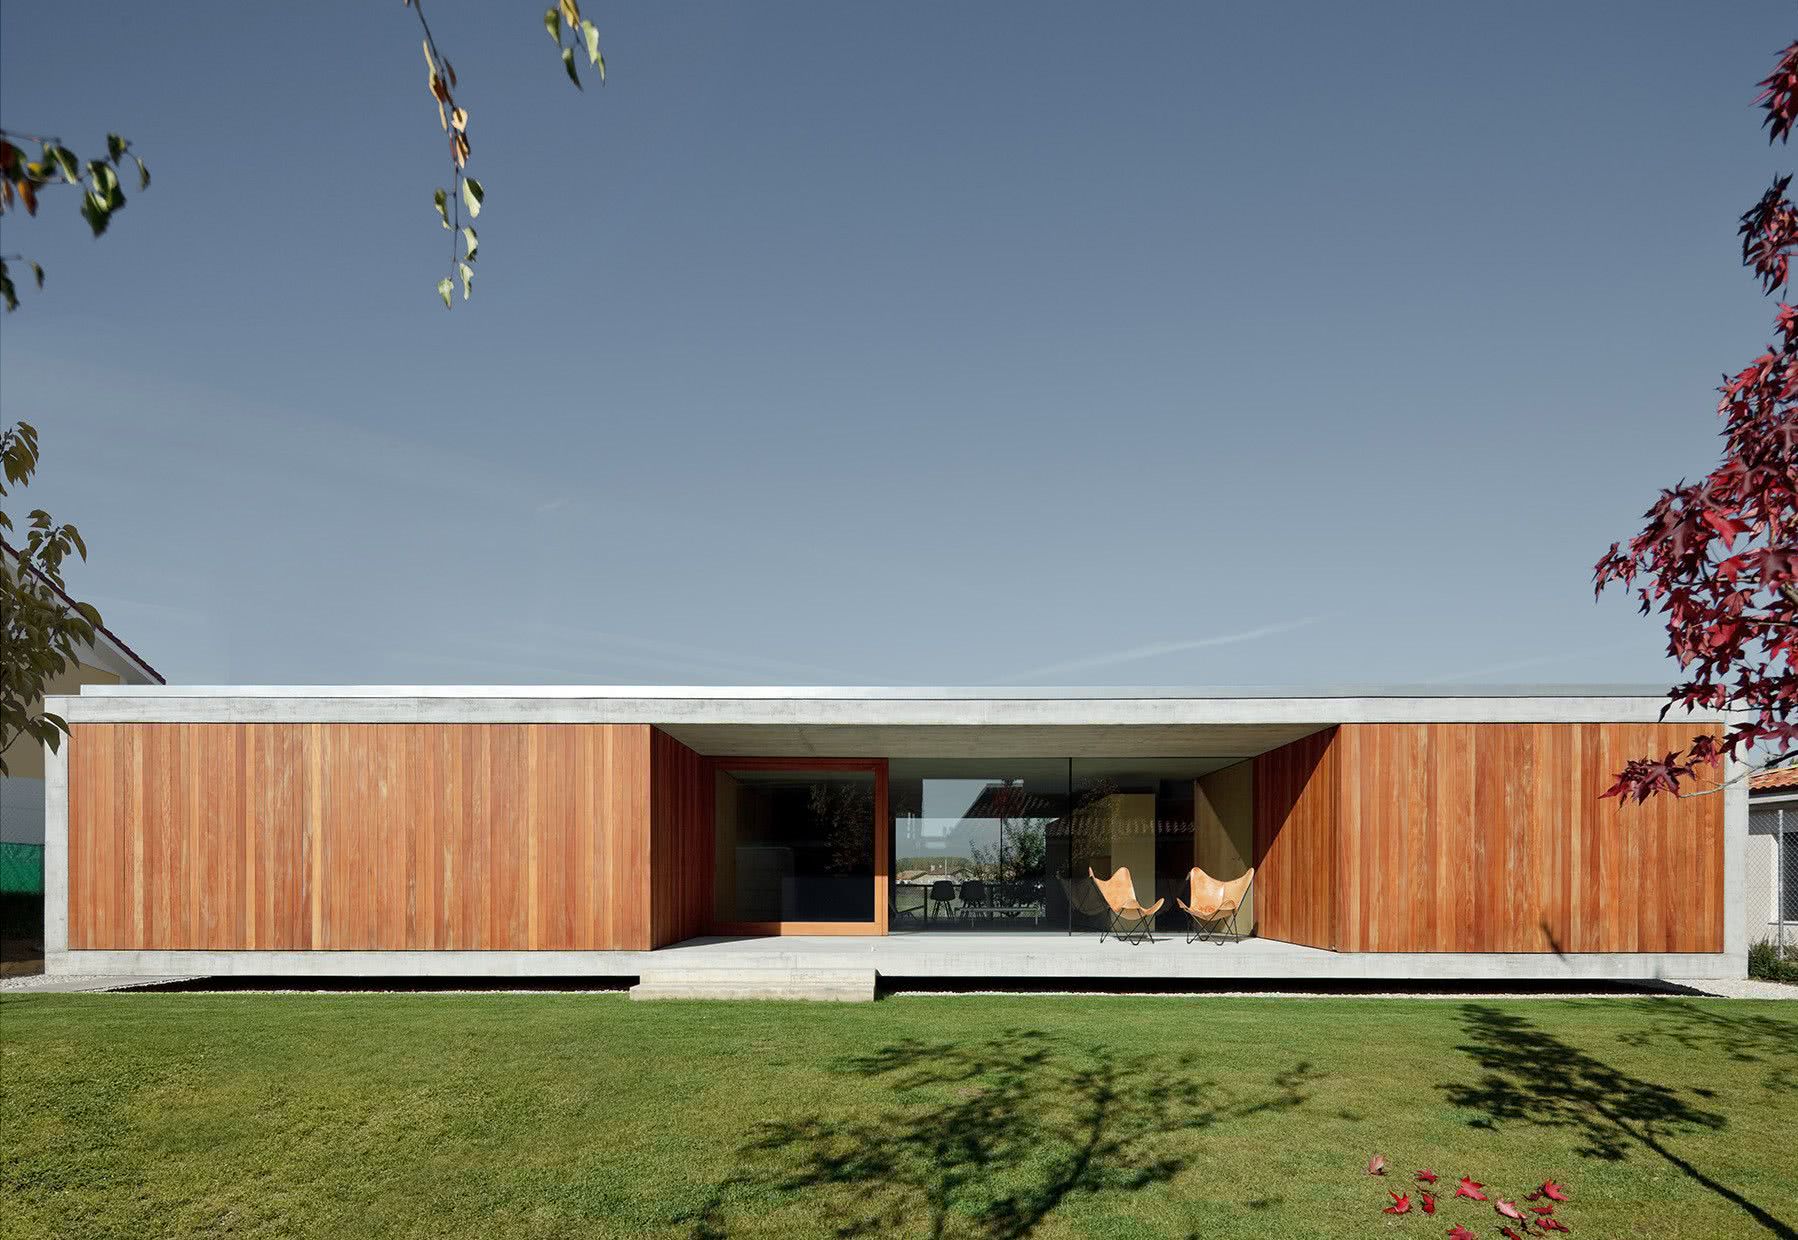 Casa térrea moderna de concreto e revestimento frontal de madeira.